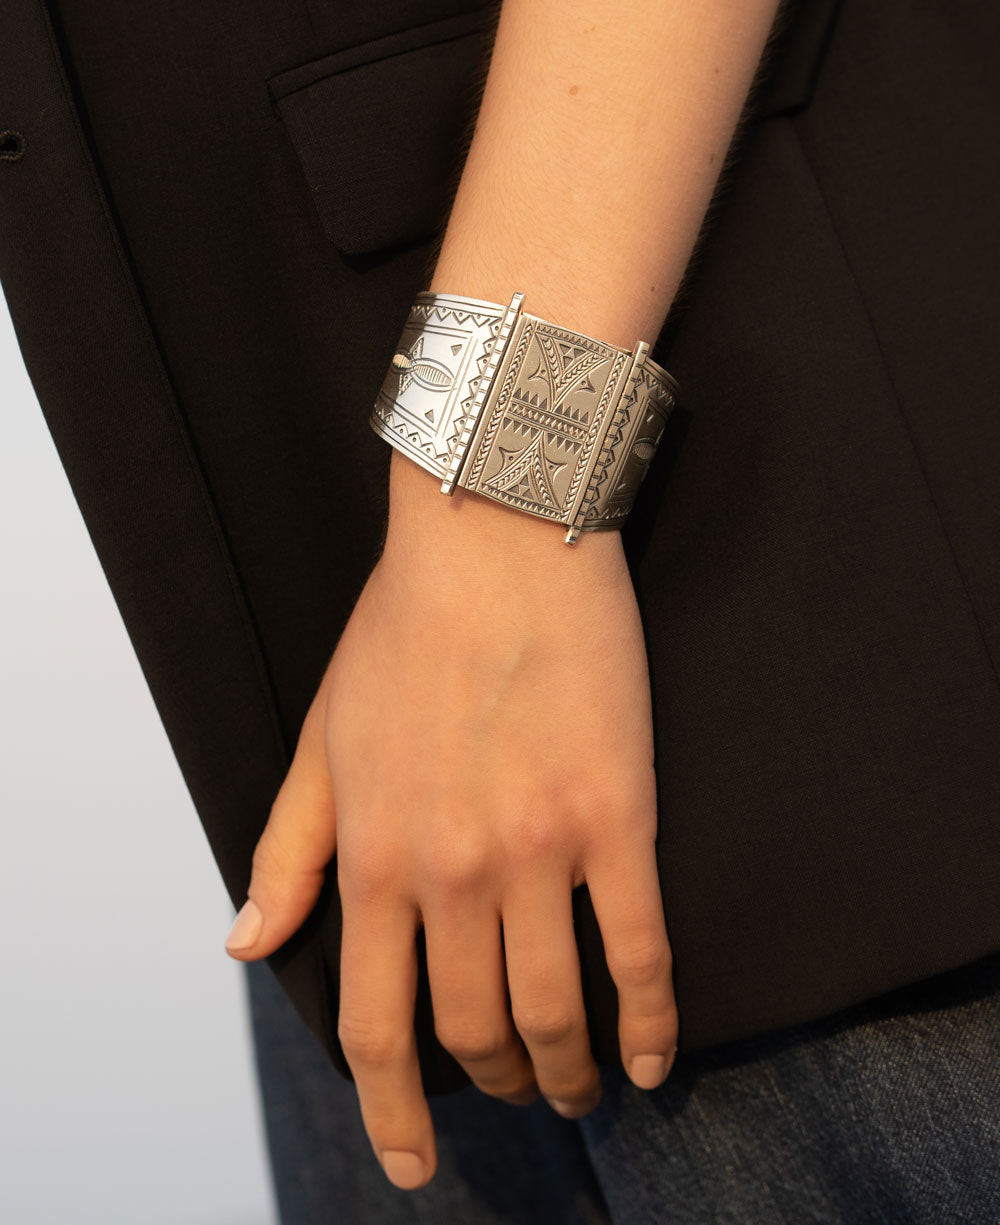 Model wearing a hilltribe silver bracelet